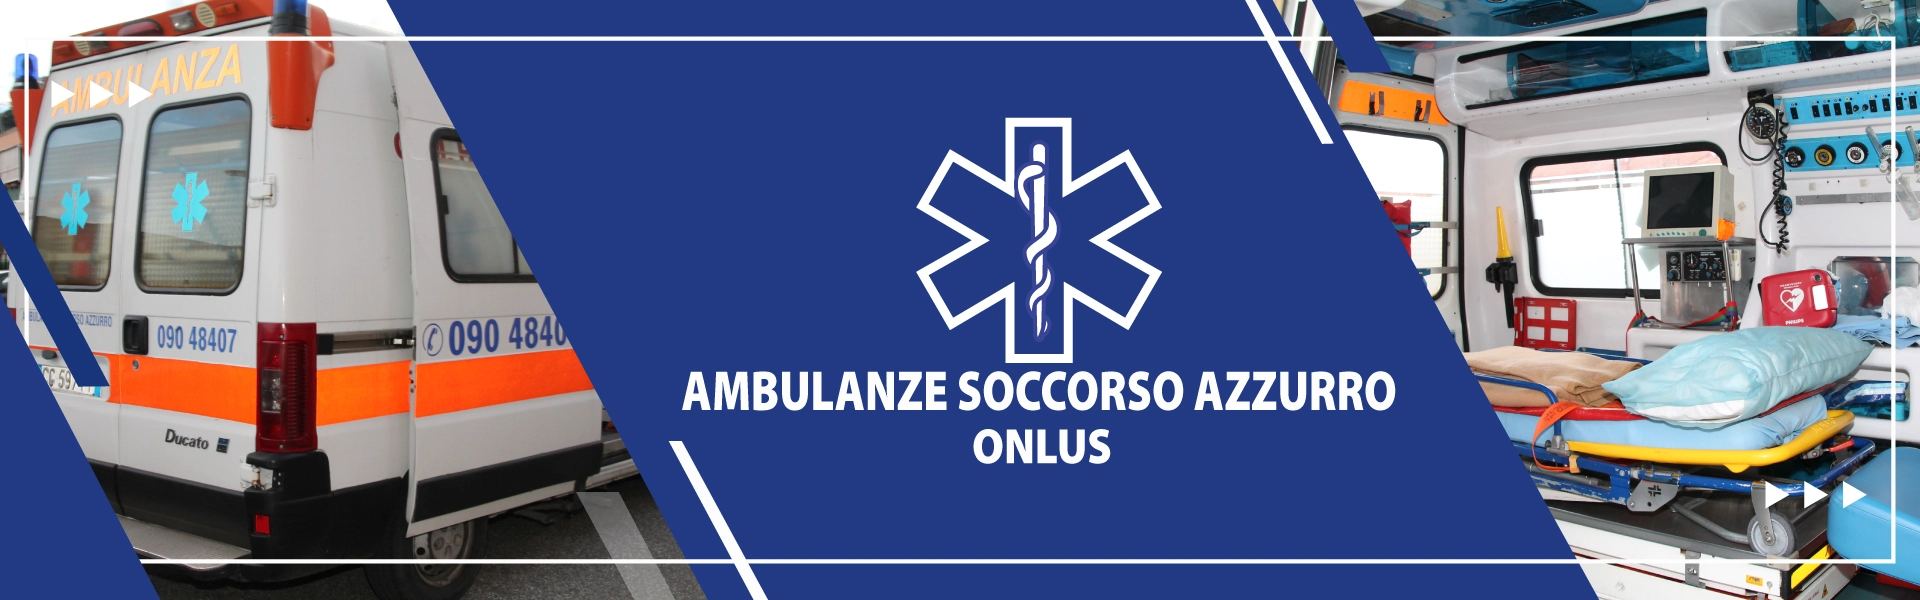 logo ambulanze private